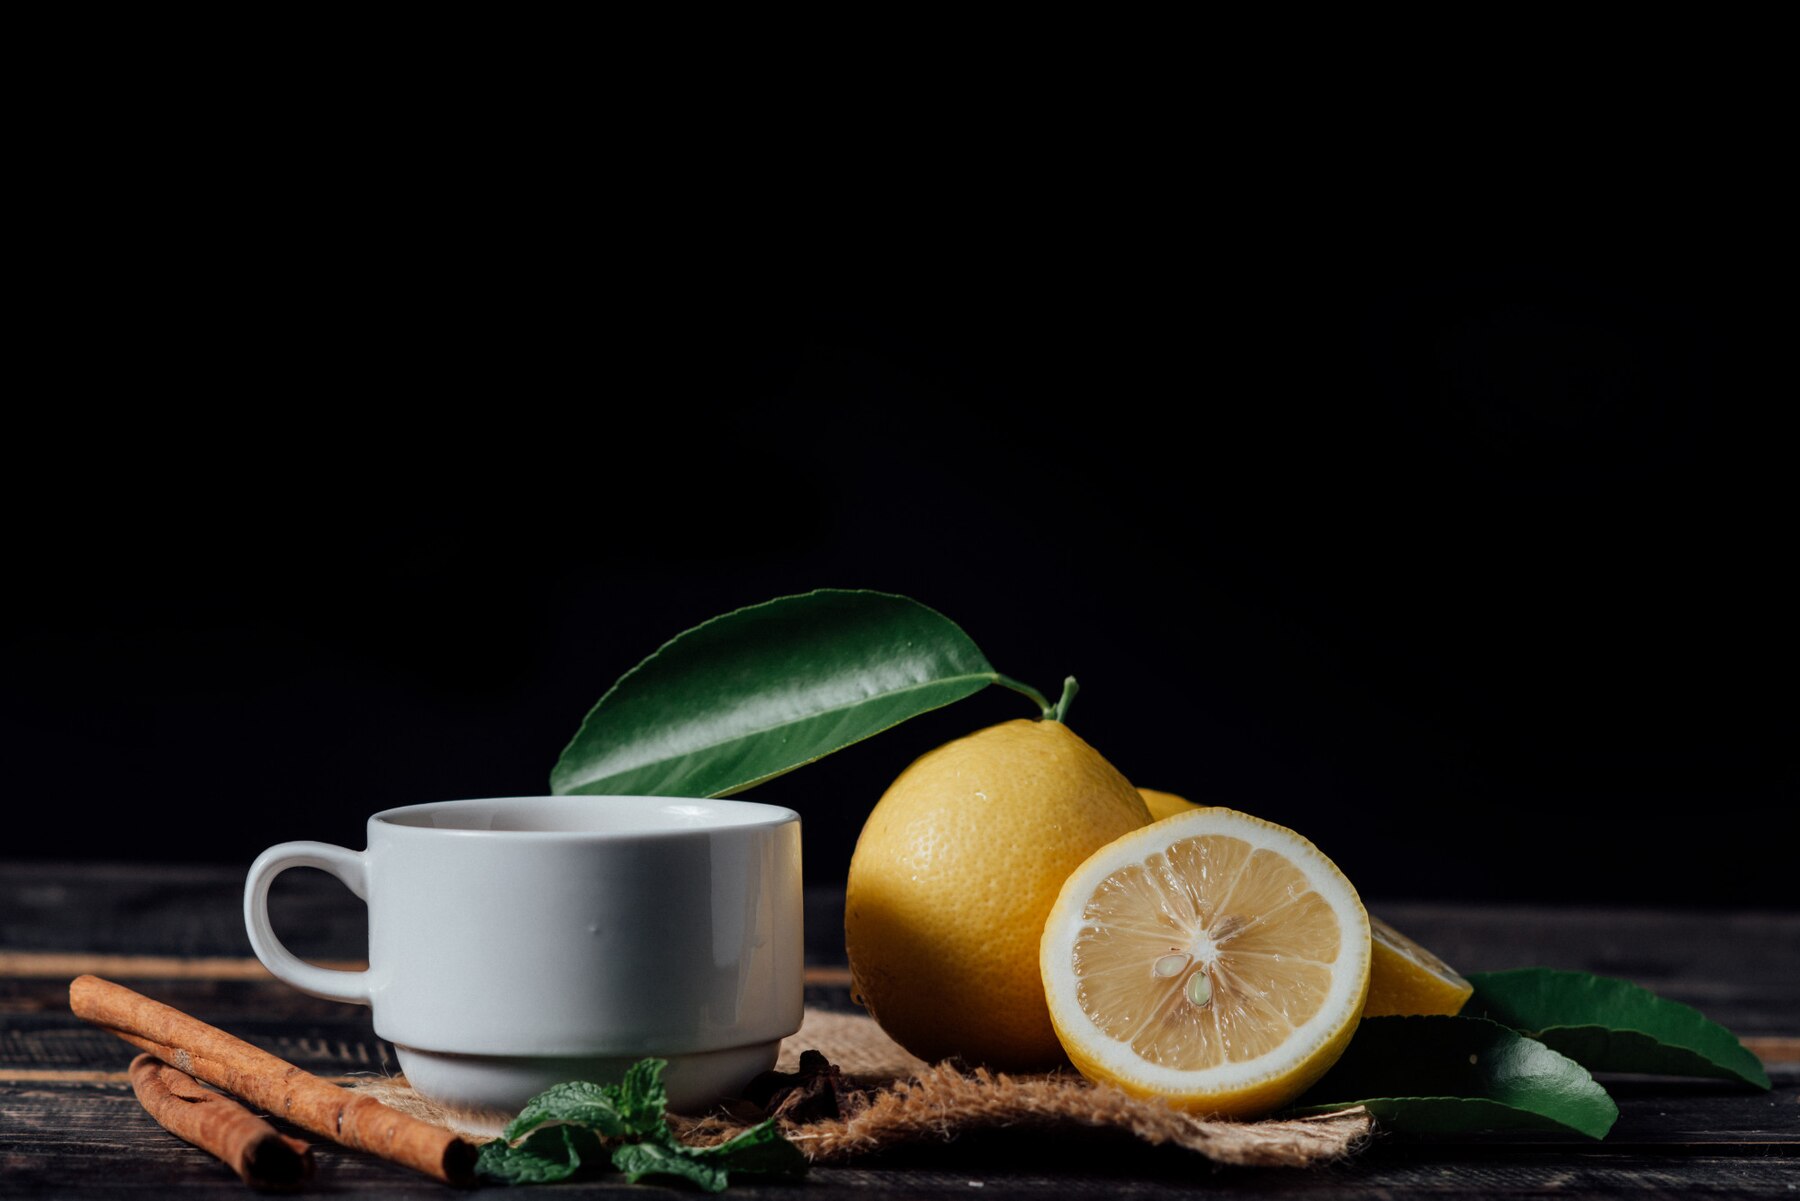 glasses-of-tea-with-lemon-sliced-lemons-on-a-chopping-board_1150-8942.jpg